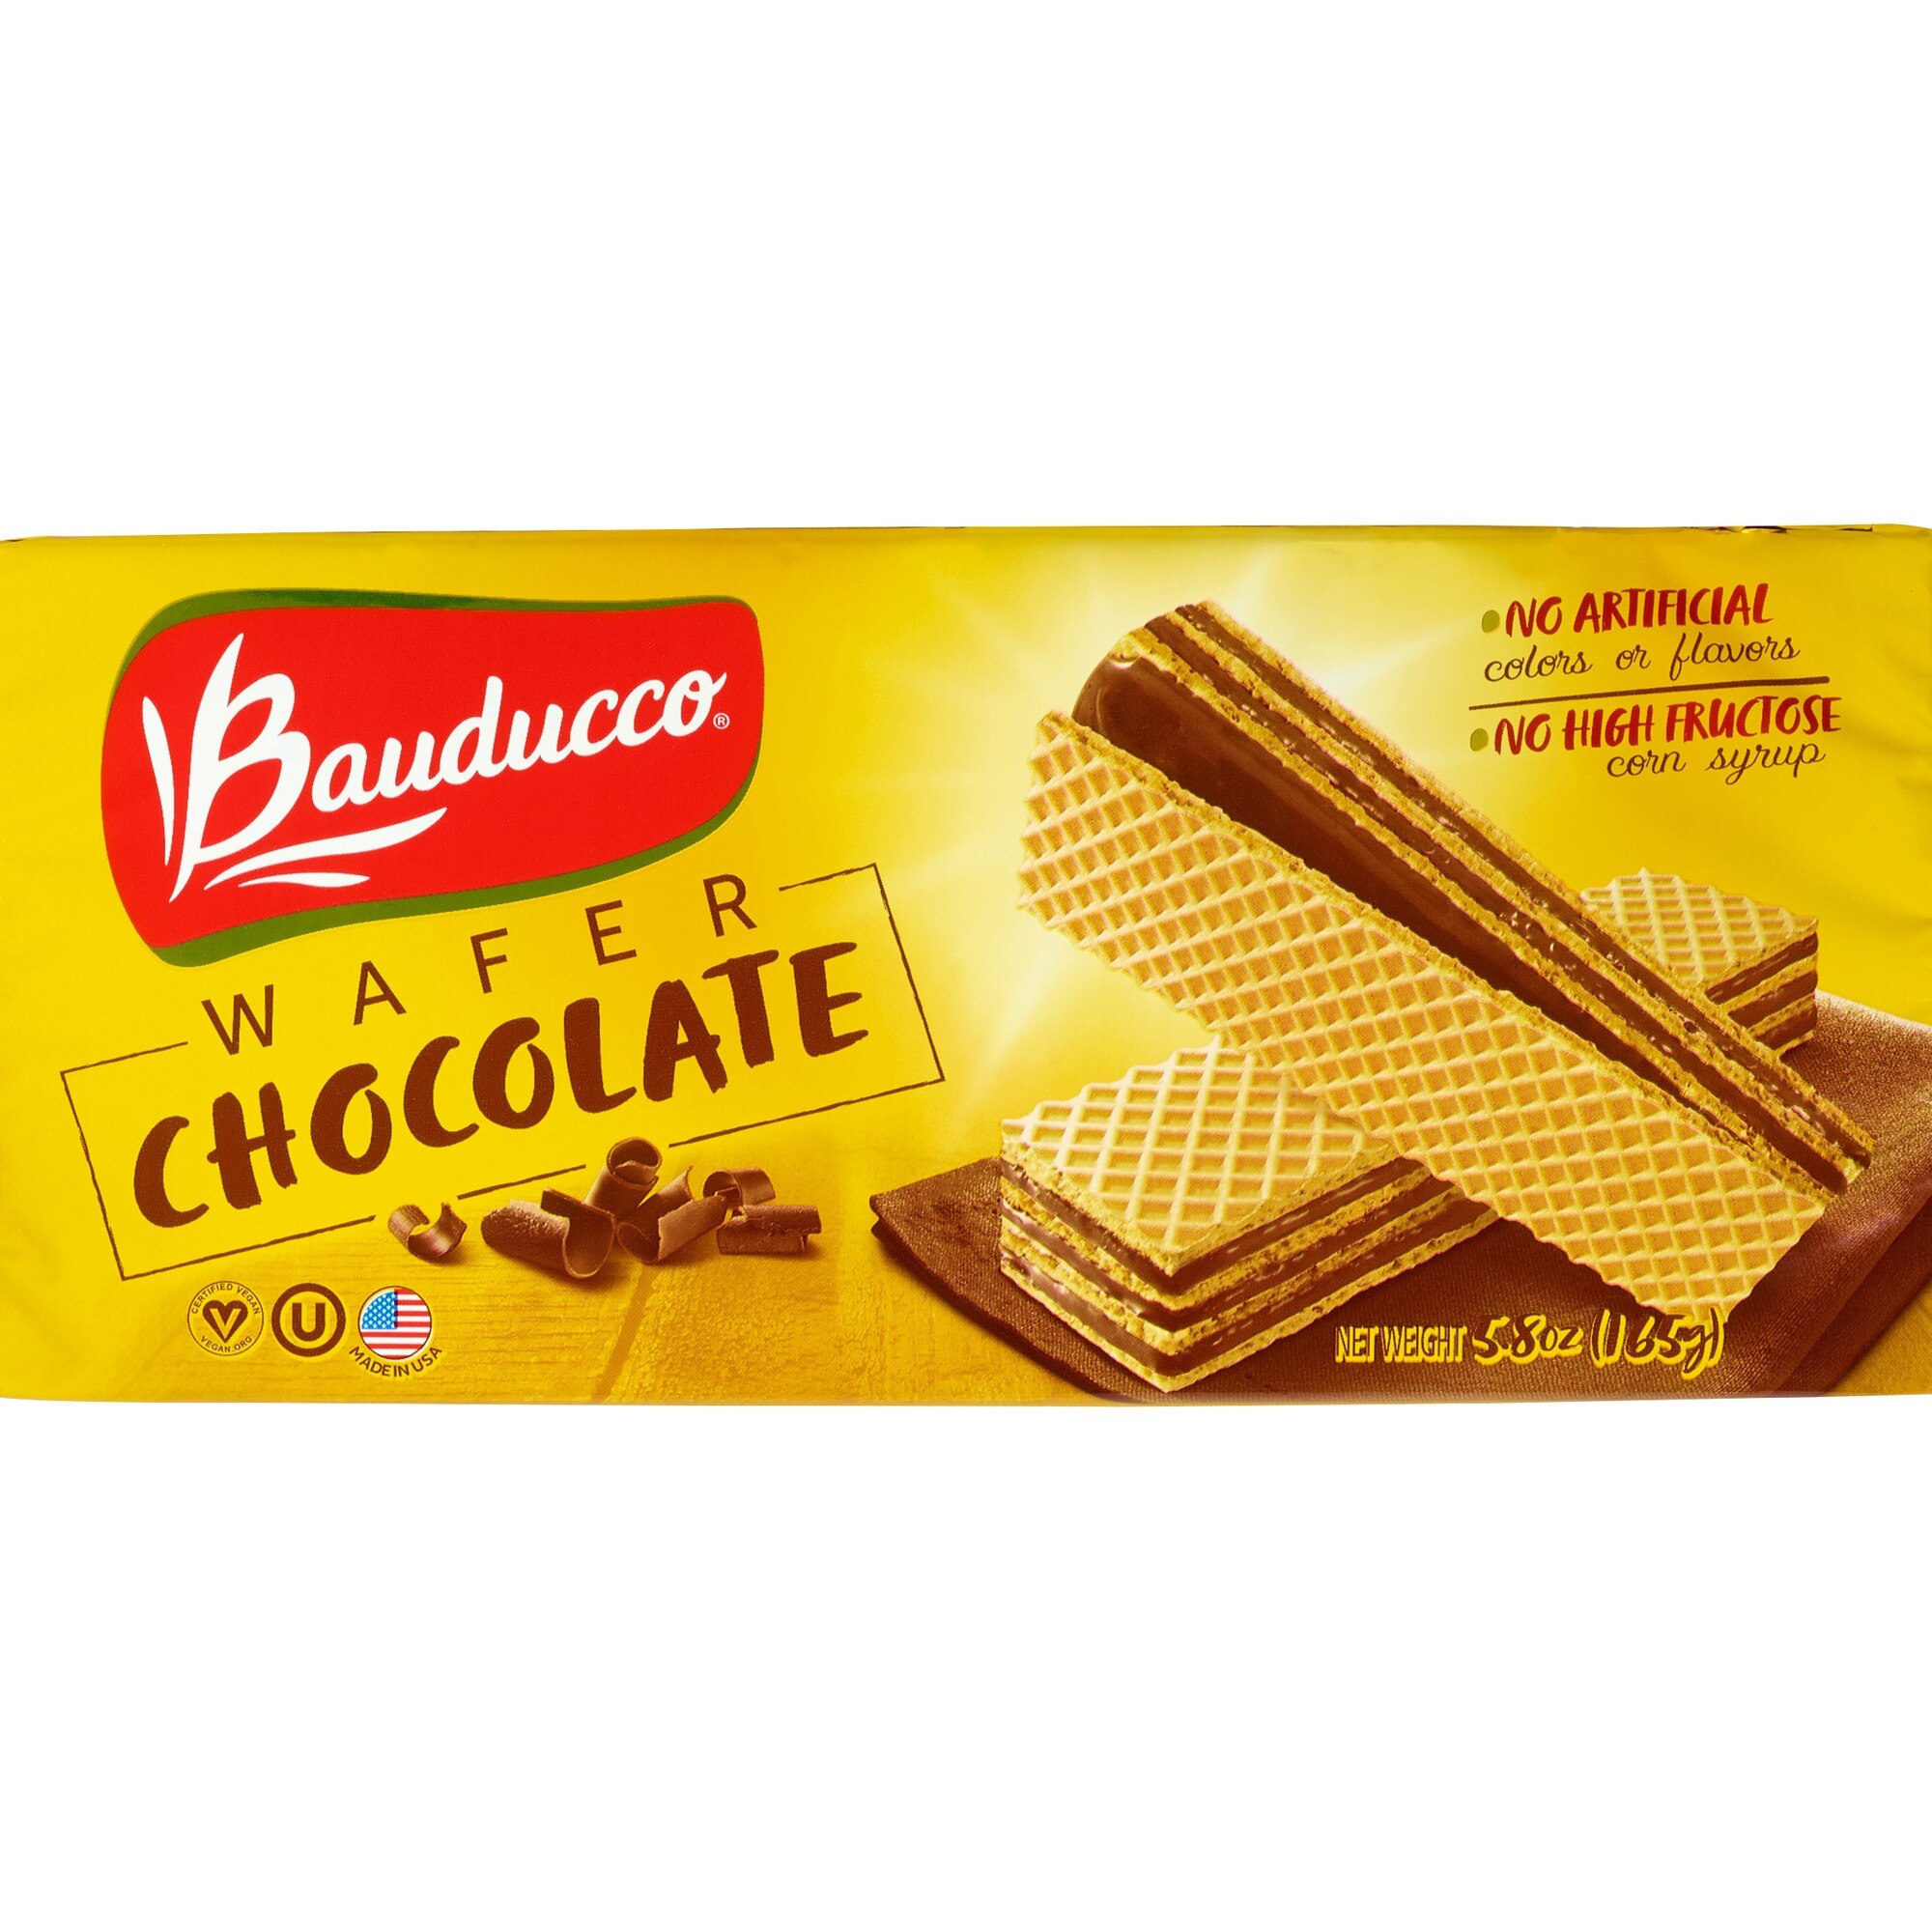 Bauducco Wafer, Chocolate, 5 Oz , CVS